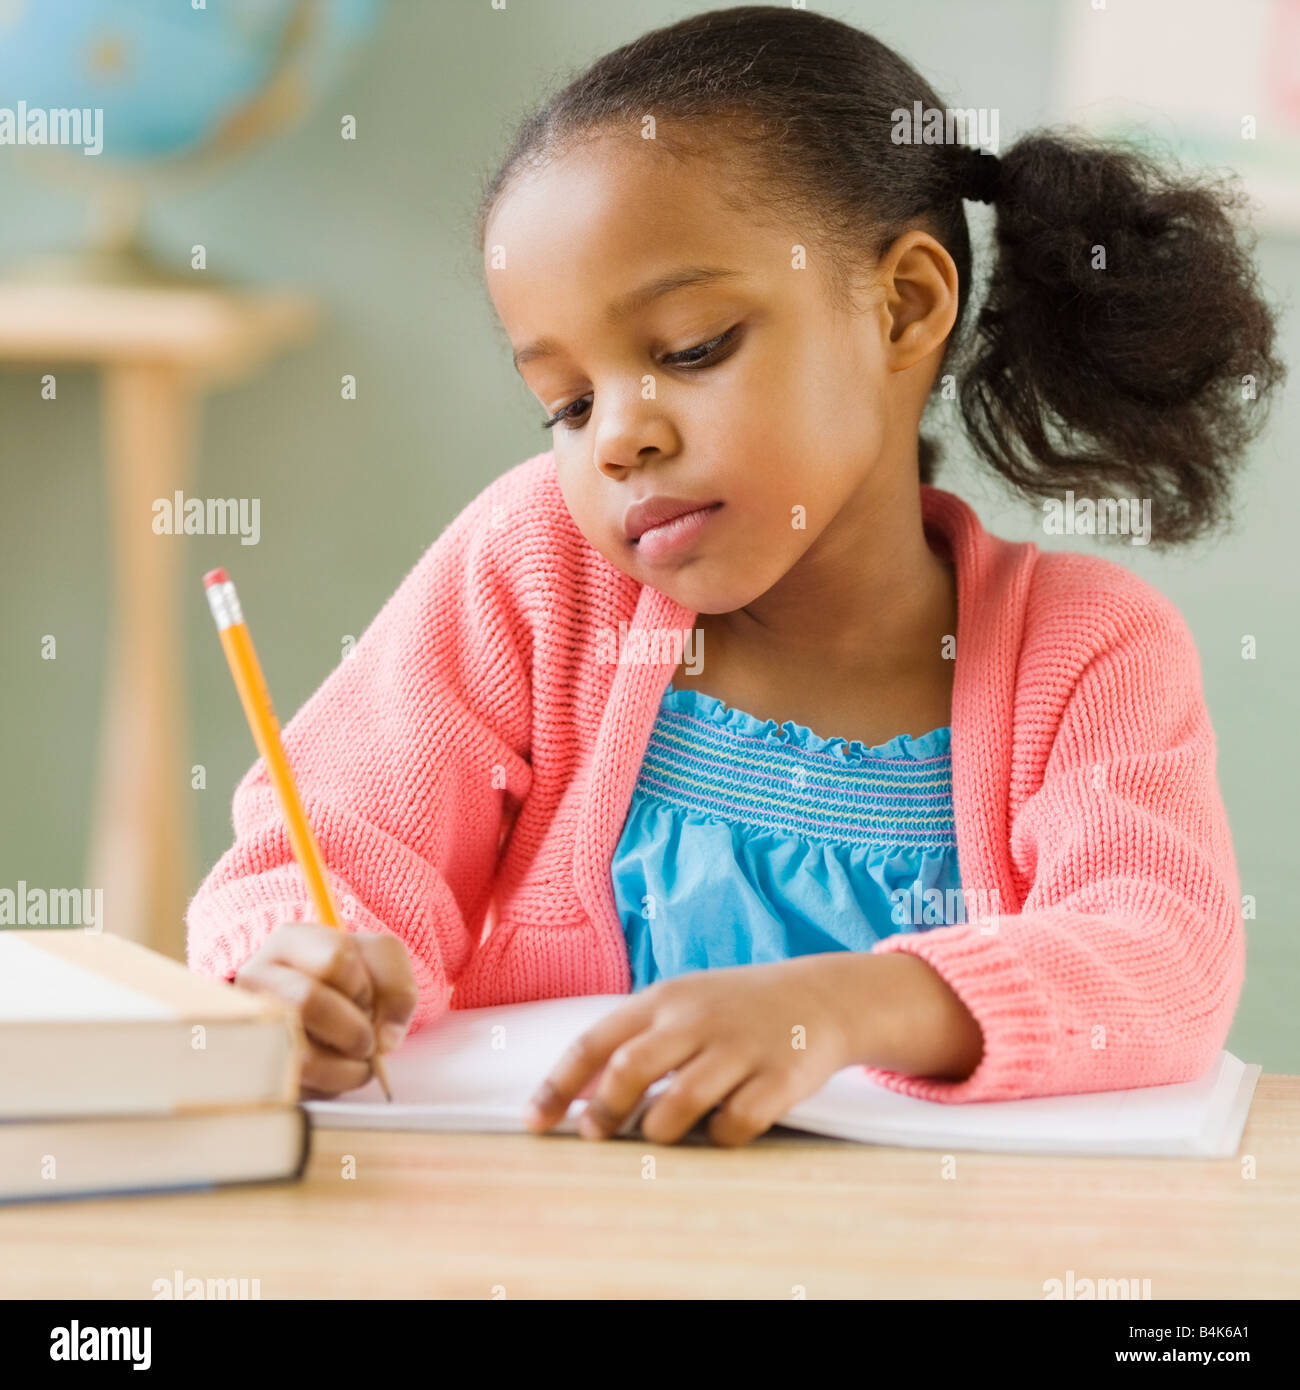 Mixed race girl doing school work Stock Photo